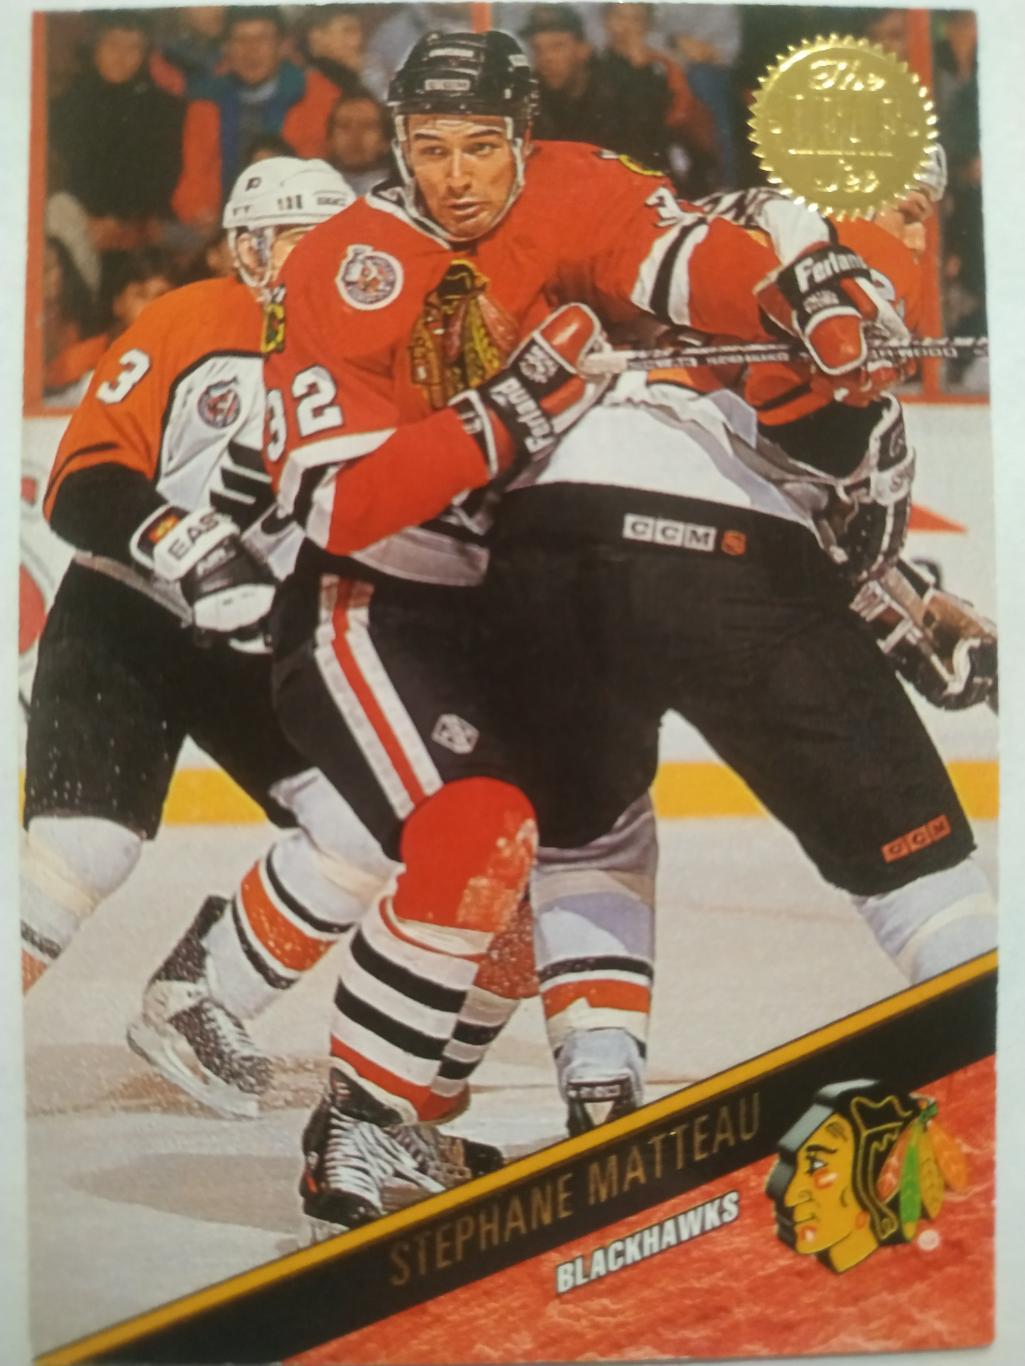 ХОККЕЙ КАРТОЧКА НХЛ LEAF SET SERIES ONE 1993-94 STEPHANE MATTEAU BLACKHAWKS #114